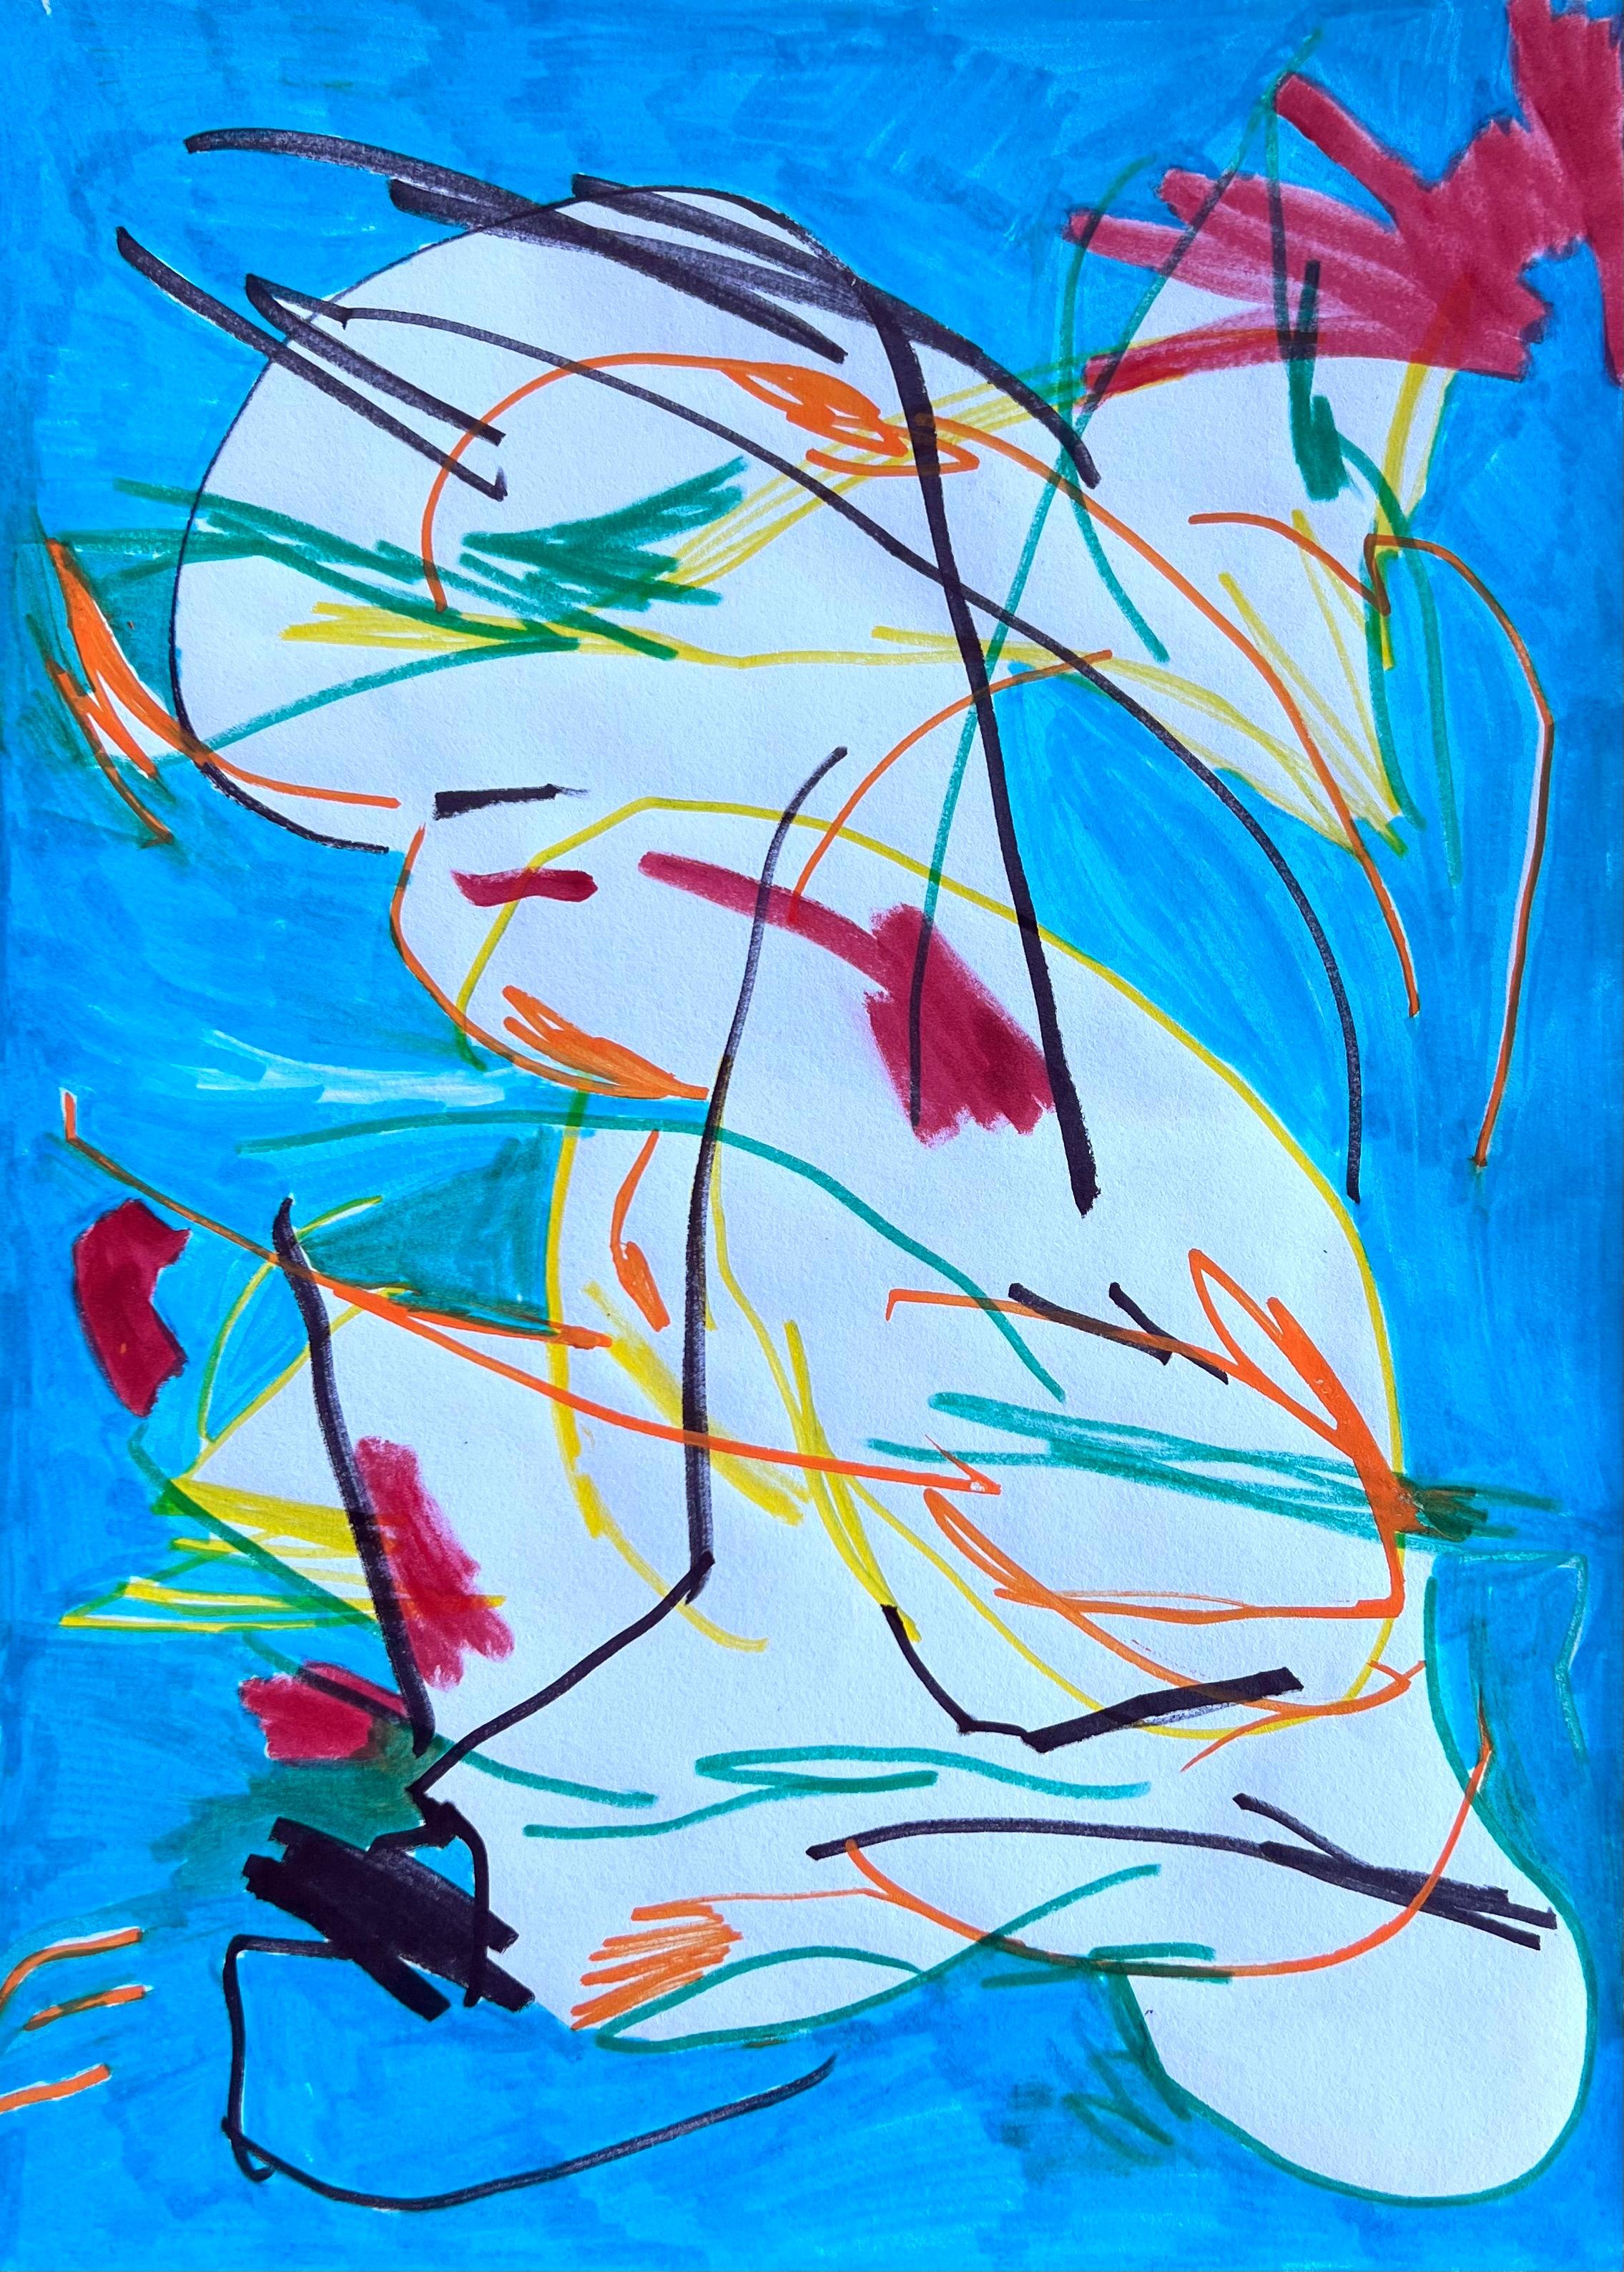 La colombe de Picasso, peinture sur papier colorée et minimaliste